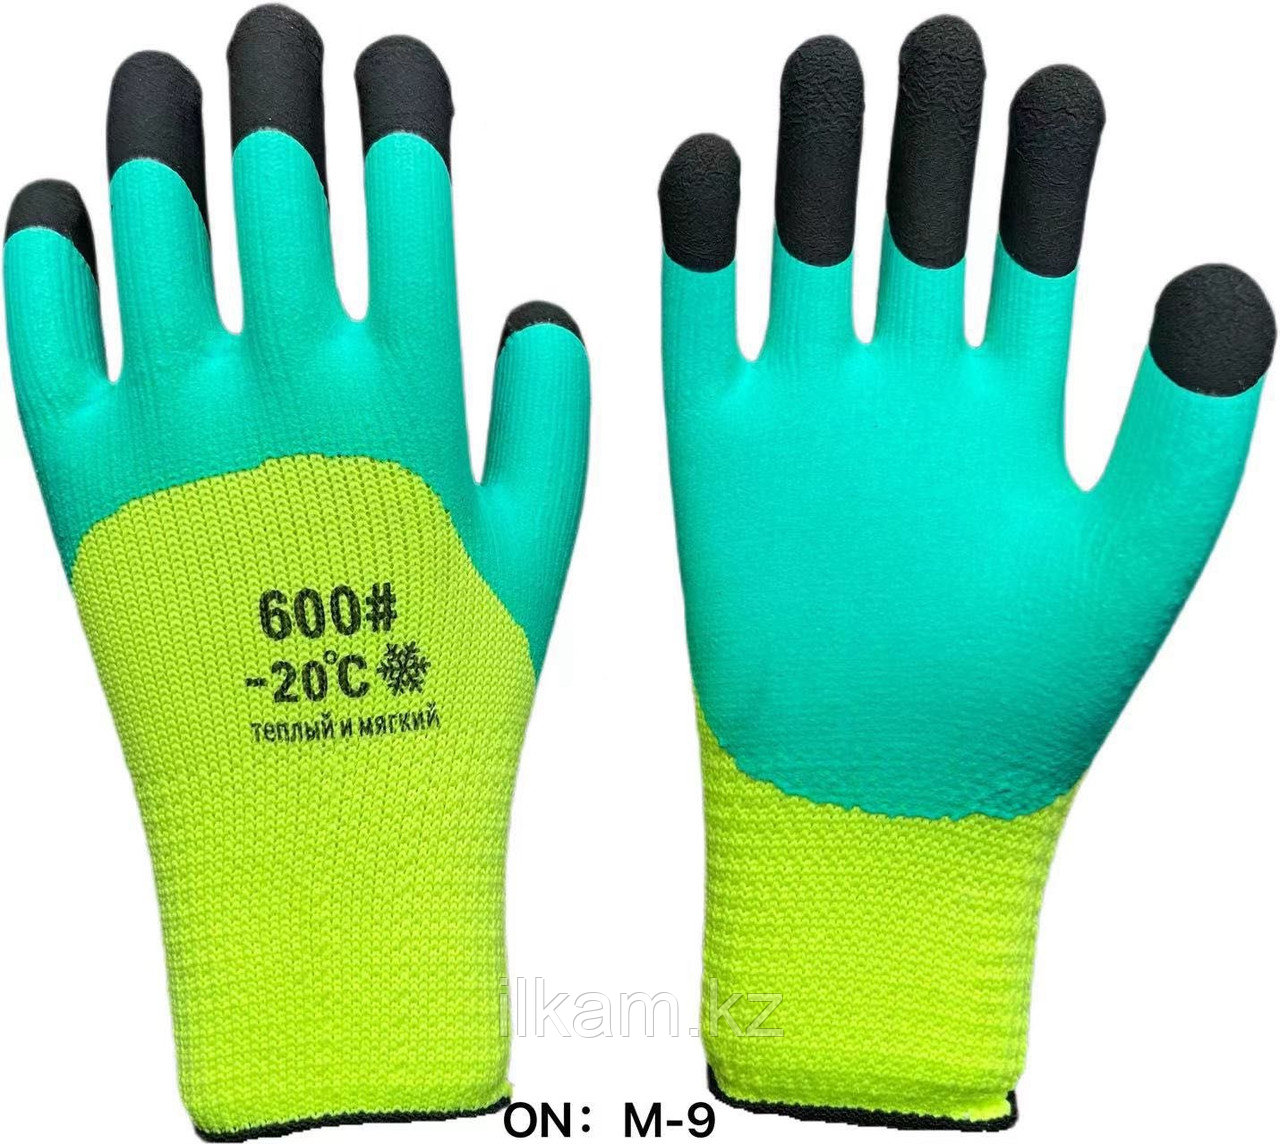 Перчатки рабочие 600# зимние